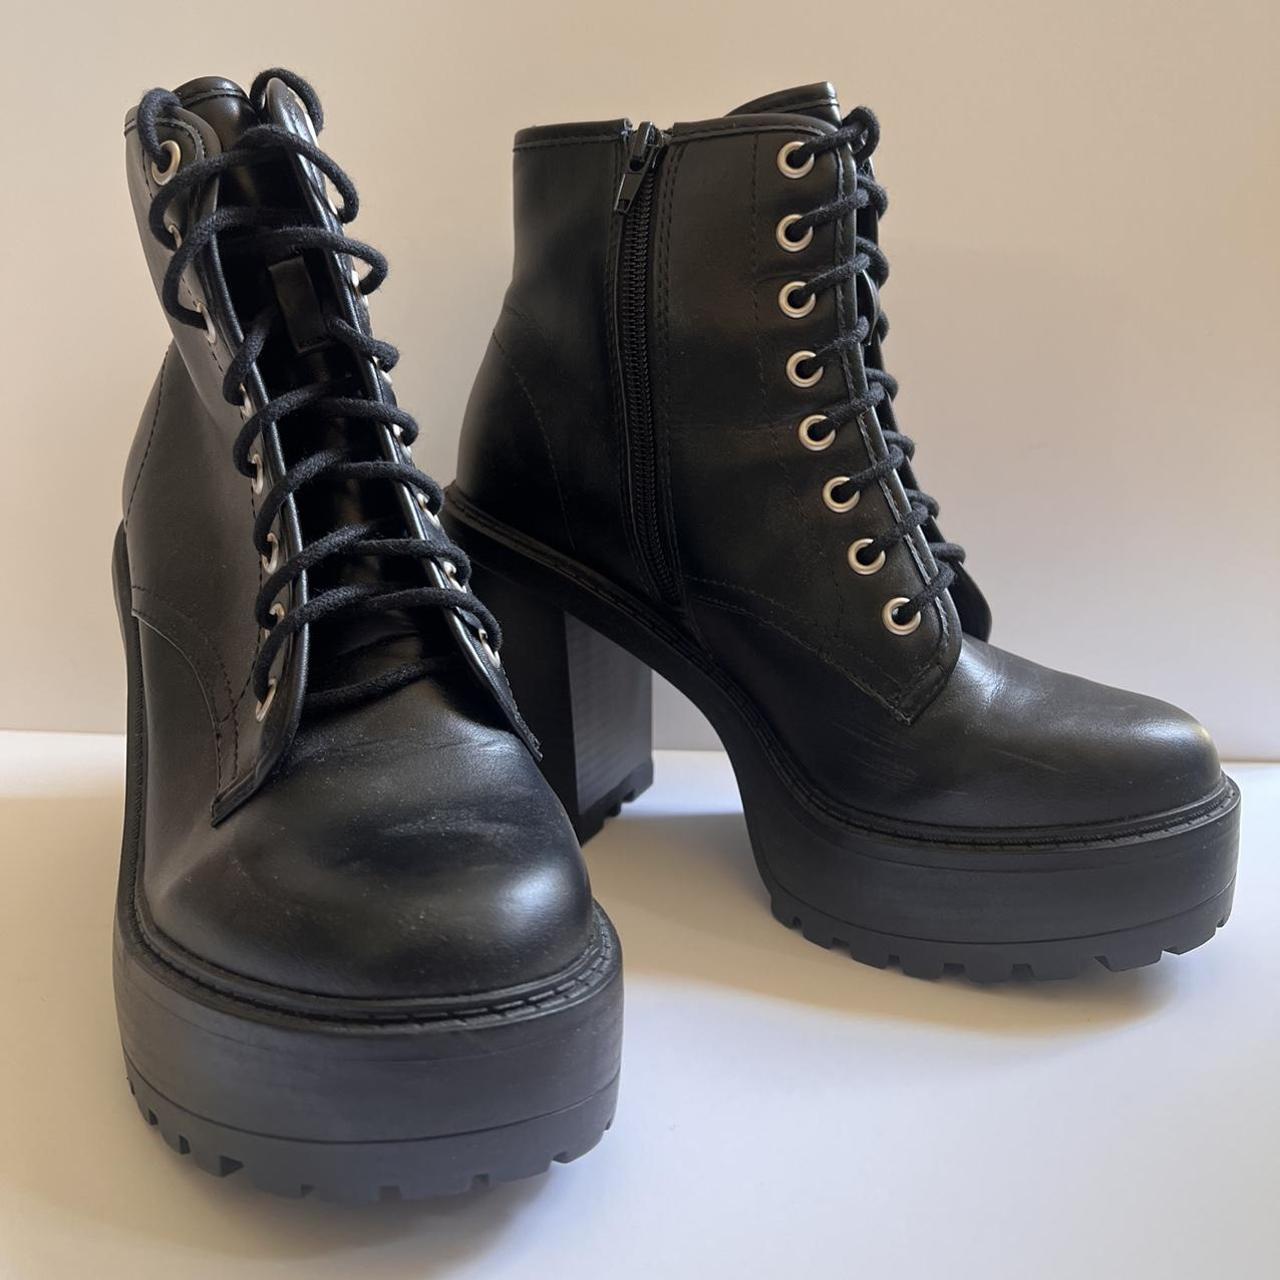 High heel combat boots - Depop